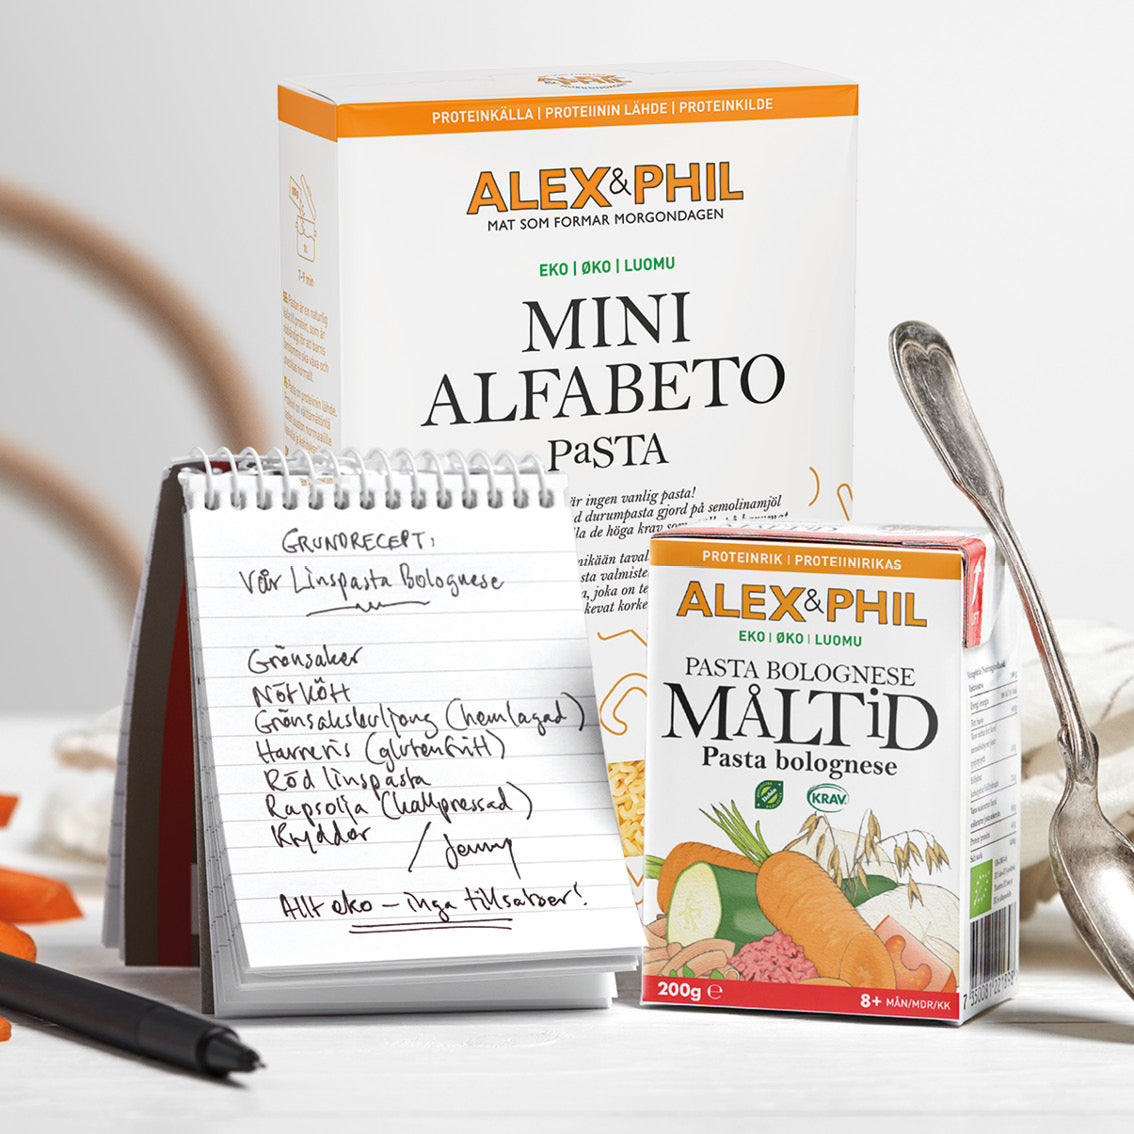 Alex Phil Mini Alfabeto Pasta gjord på proteinfyllt durumvete.